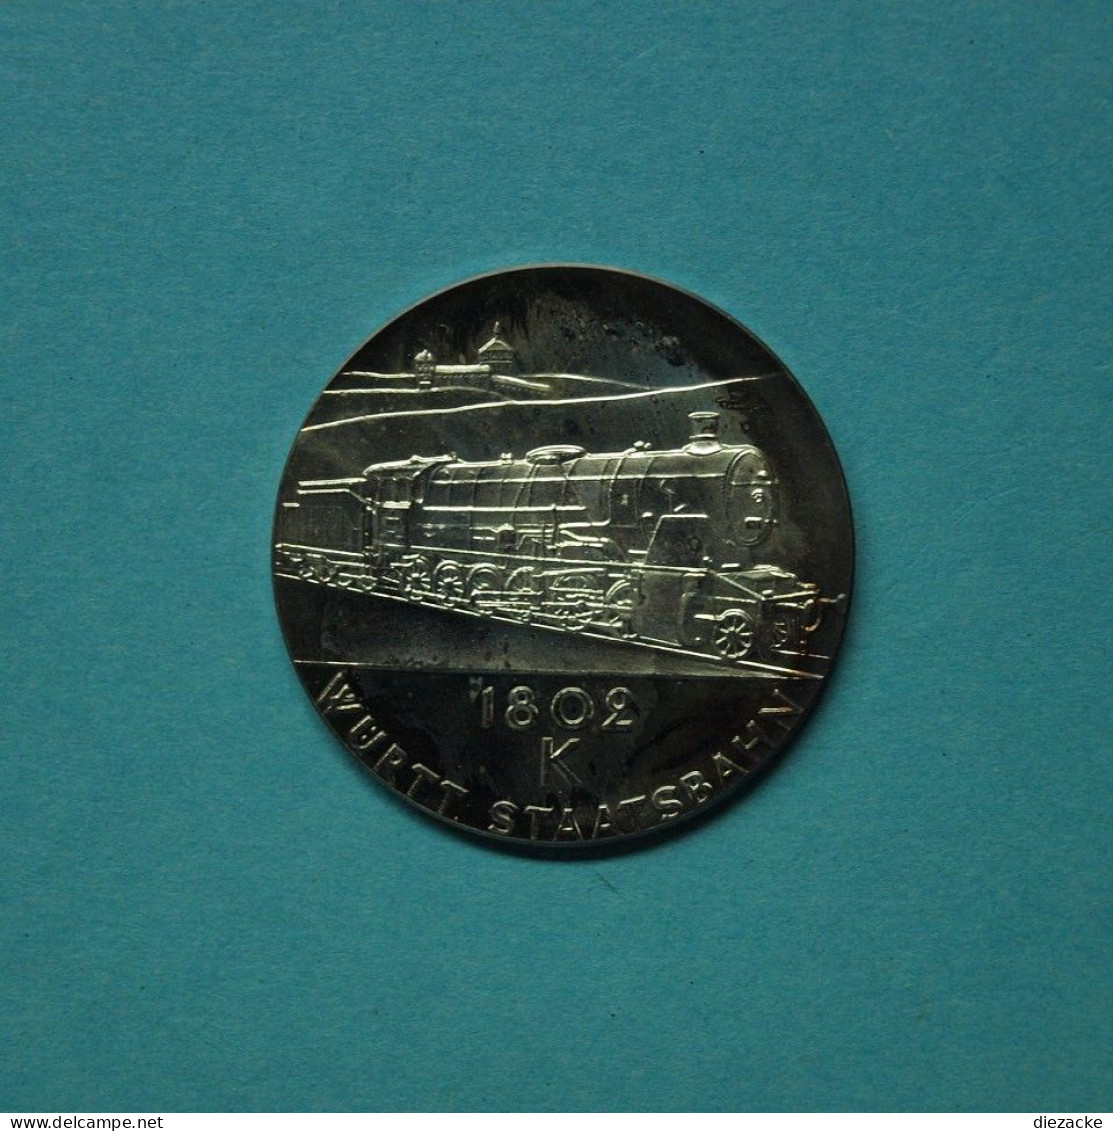 Medaille Württembergische Staatsbahn 18 O2 K PP (M5379 - Non Classés